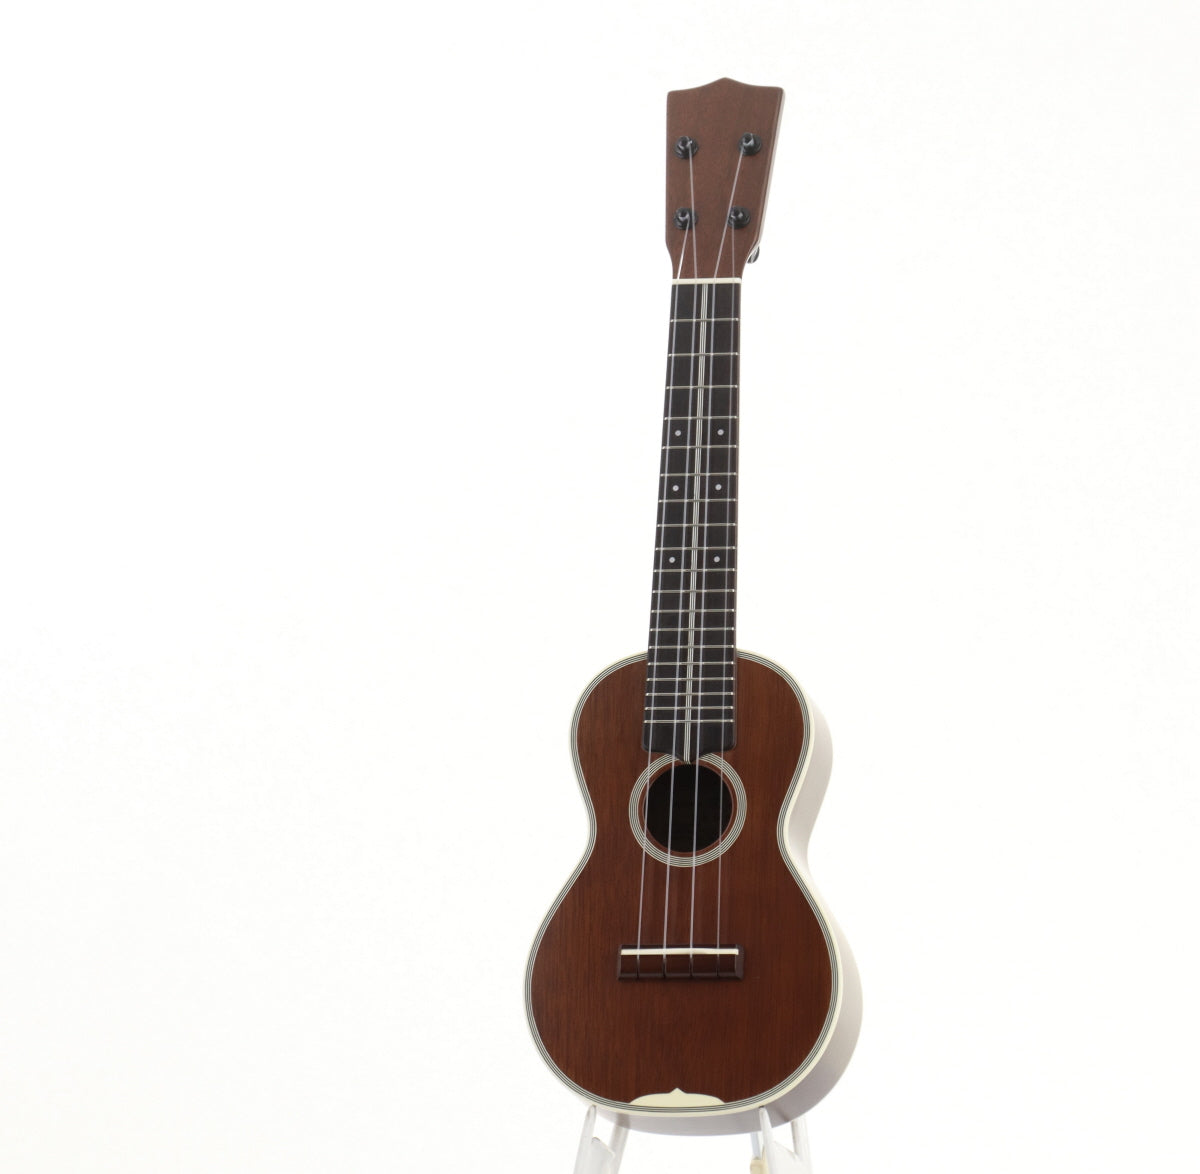 [SN 1105] USED LUNA / LS-3mv soprano size ukulele [08]